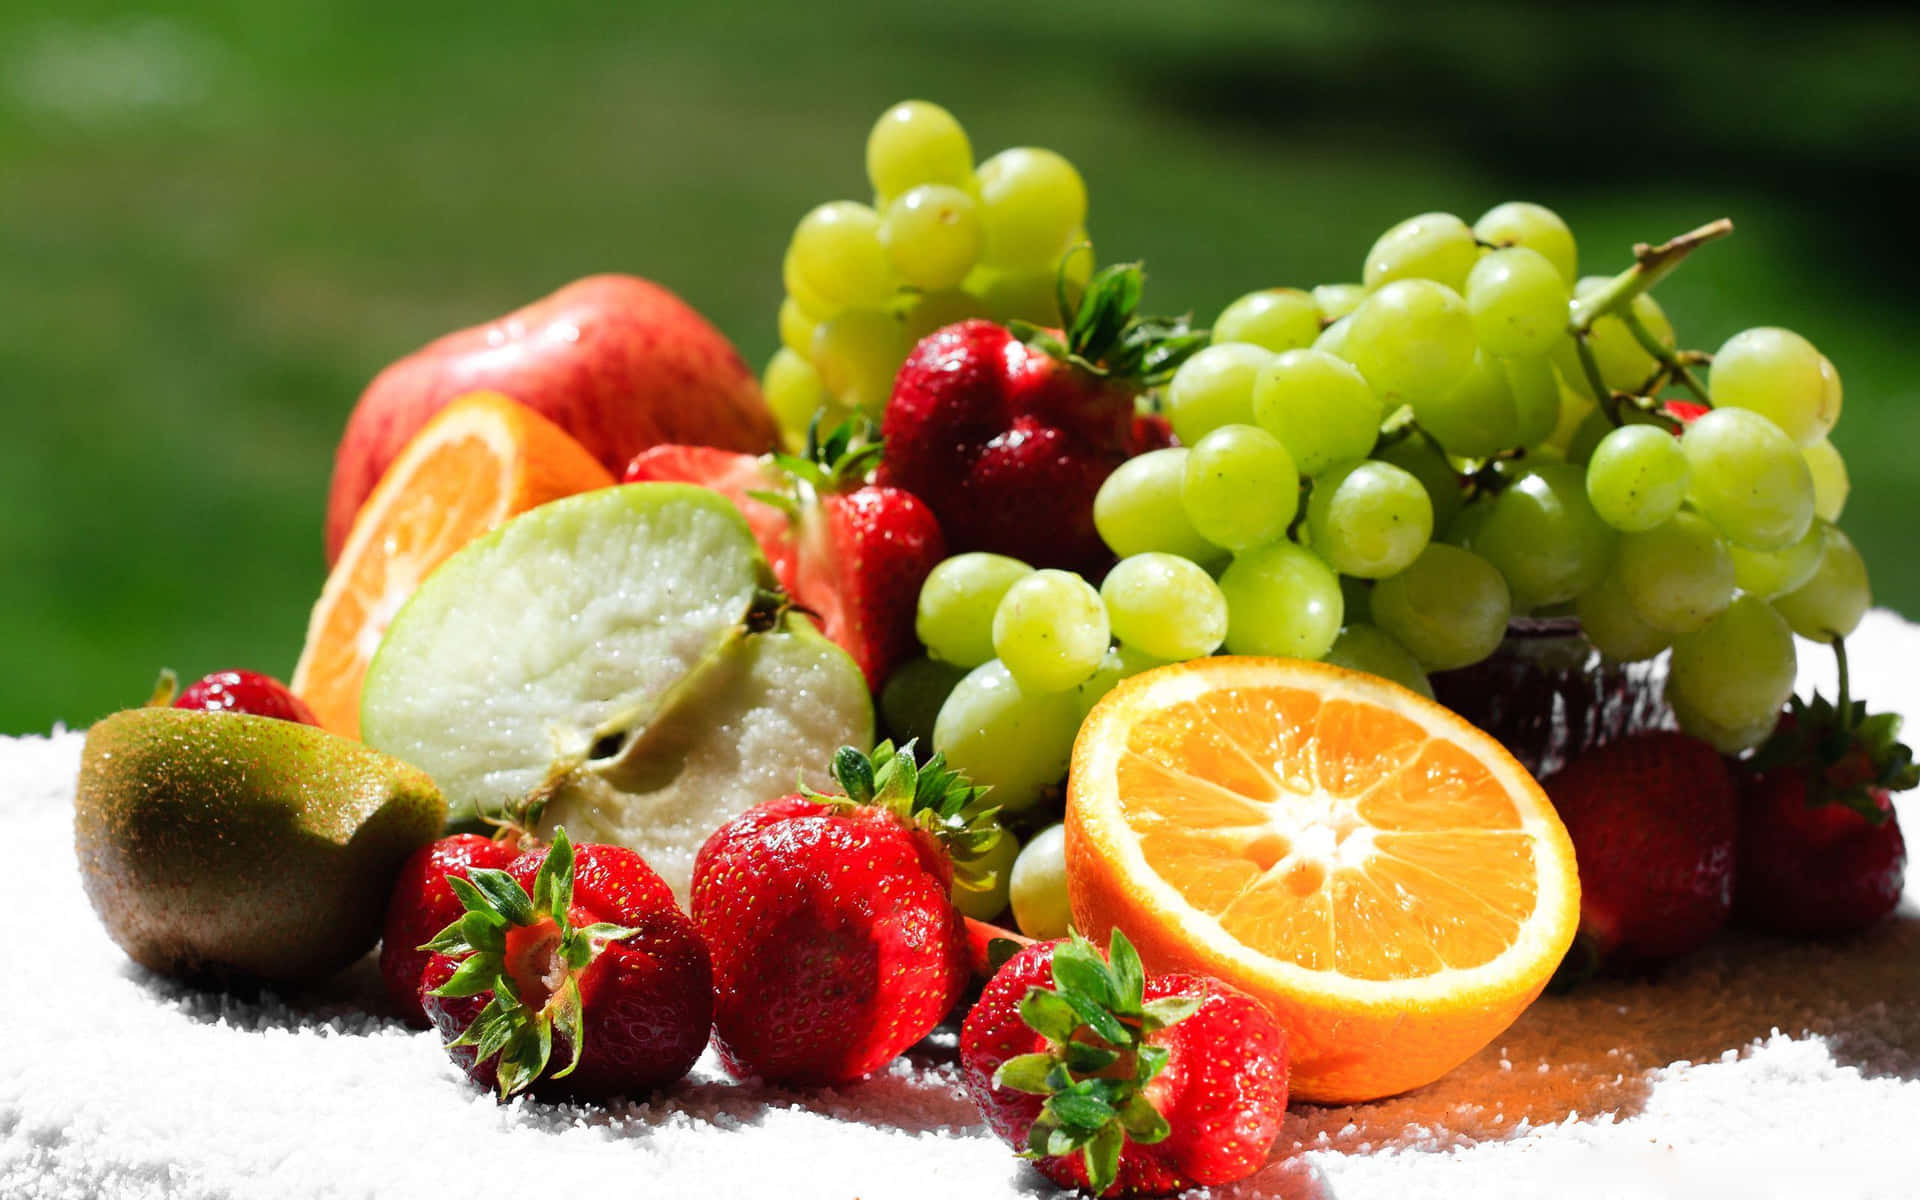 Imagende Frutas De Alimentos Saludables En Un Plato